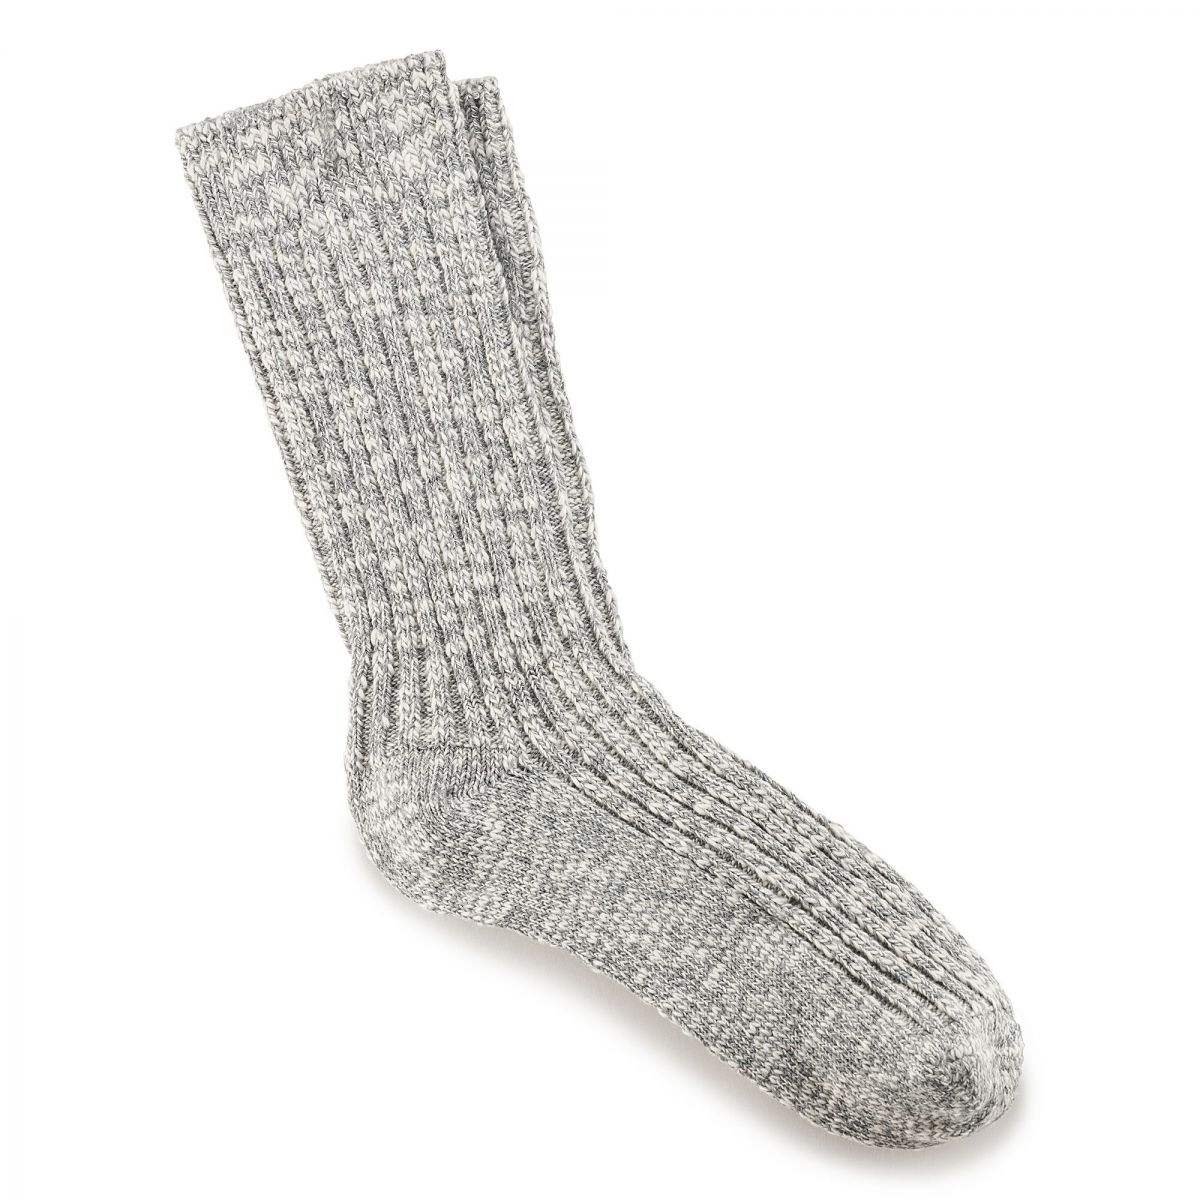 BIRKENSTOCK Men's Cotton Slub Socks Gray/White - 1008060 GRAY - GRAY, Medium